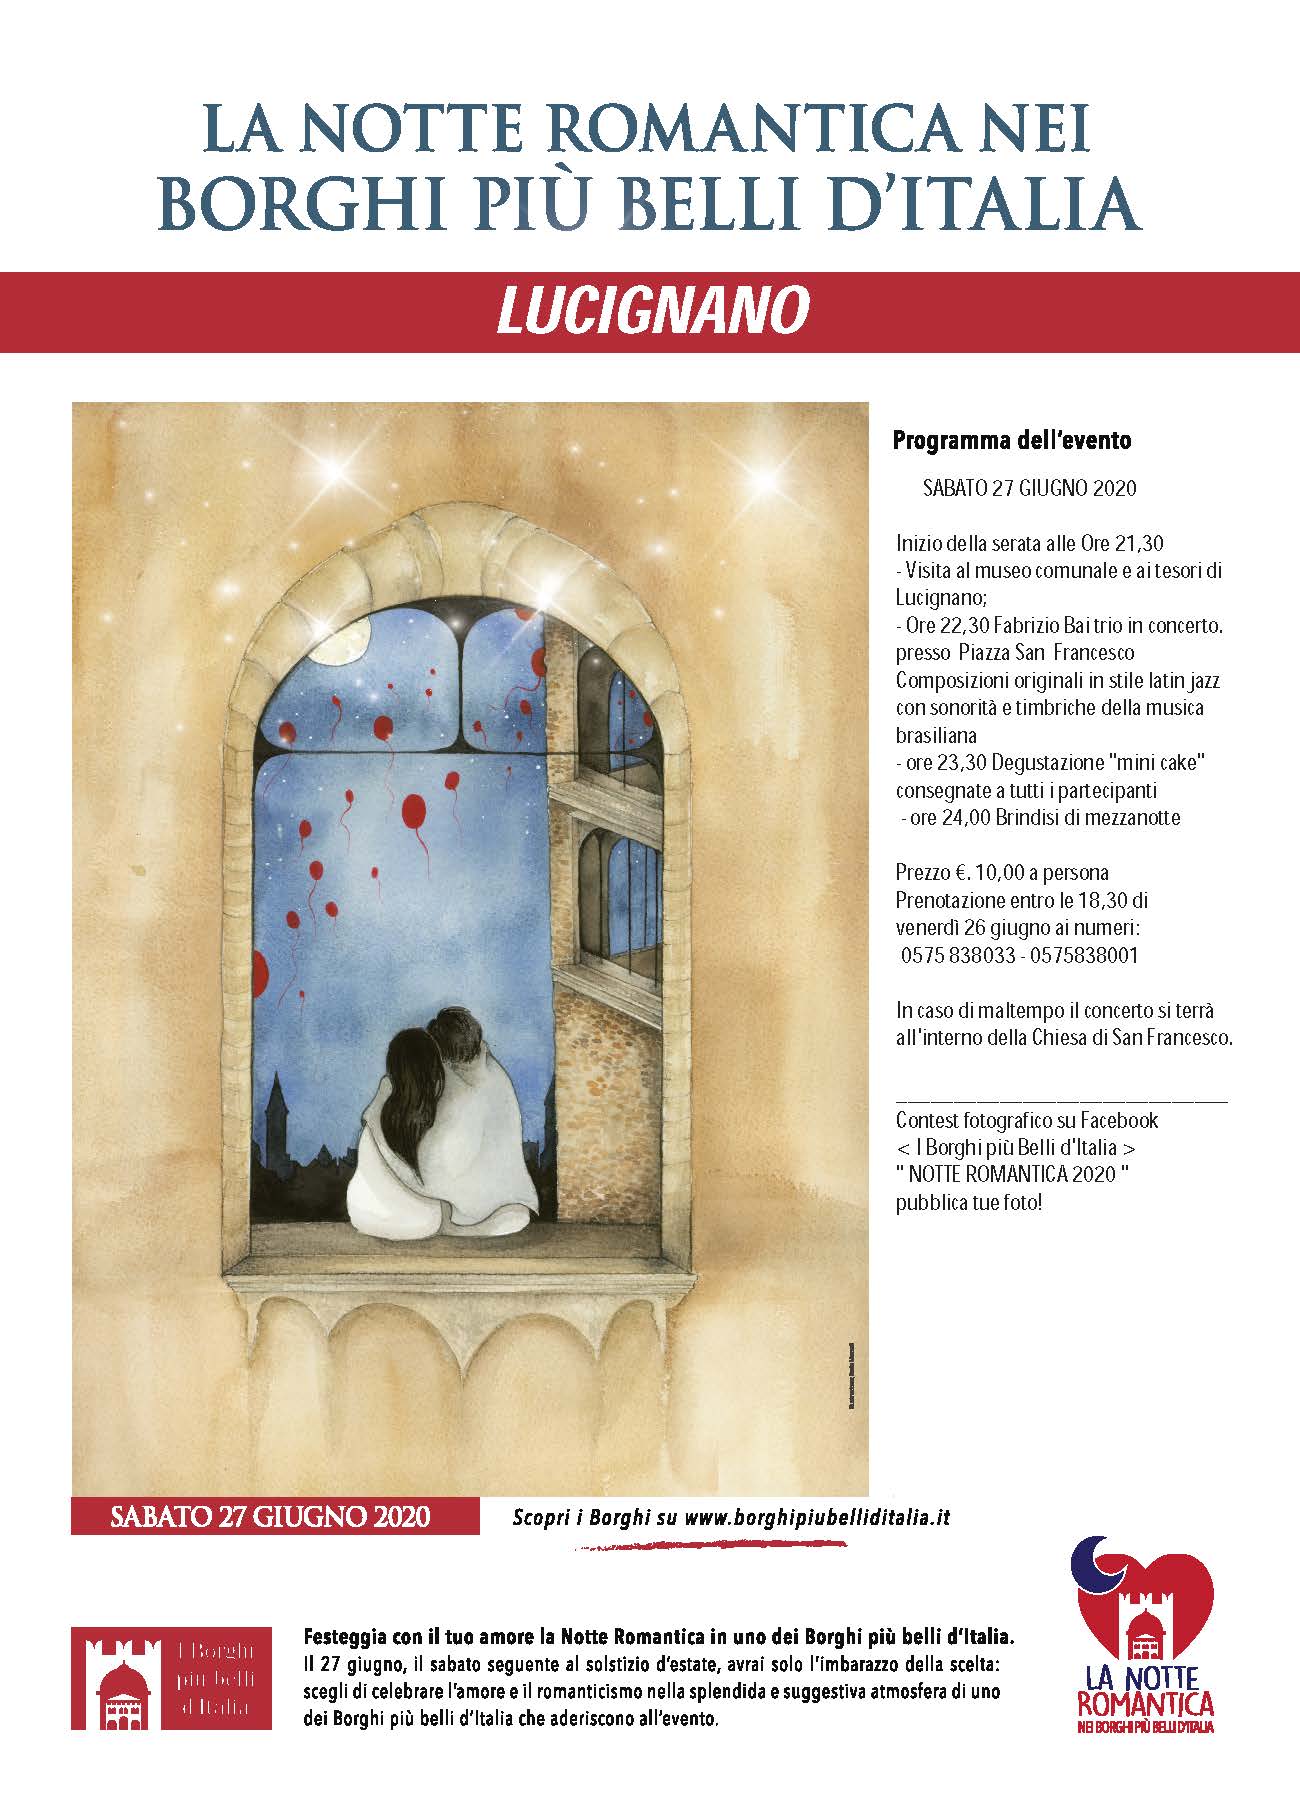 Lucignano, arriva la Notte Romantica nei borghi più belli d’Italia